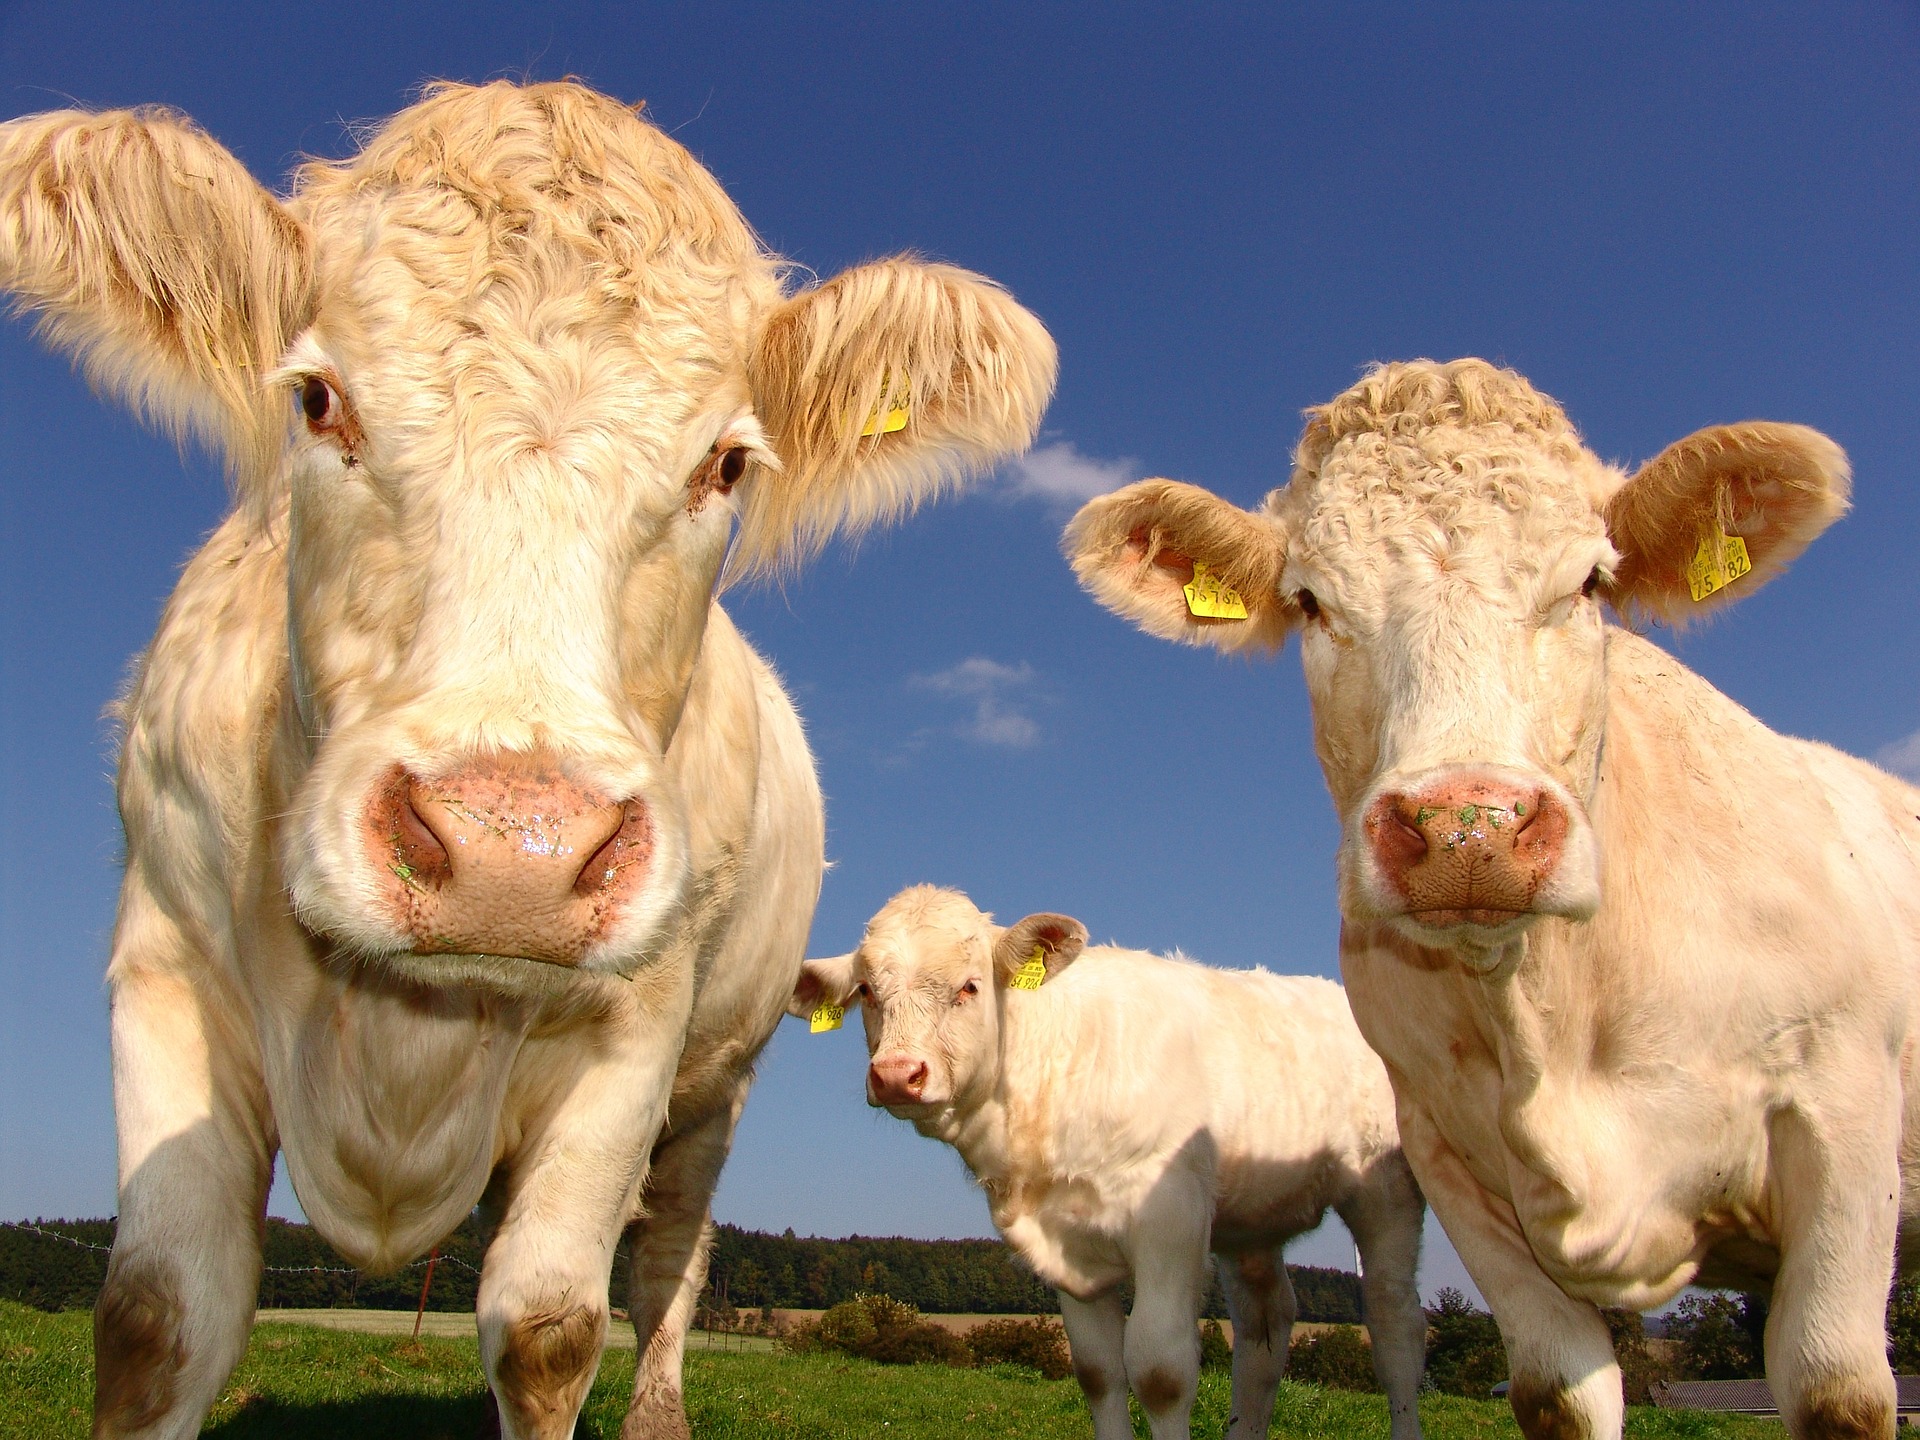 Ισπανία: Πώς οι αγελάδες βοηθούν στην αντιπυρική προστασία